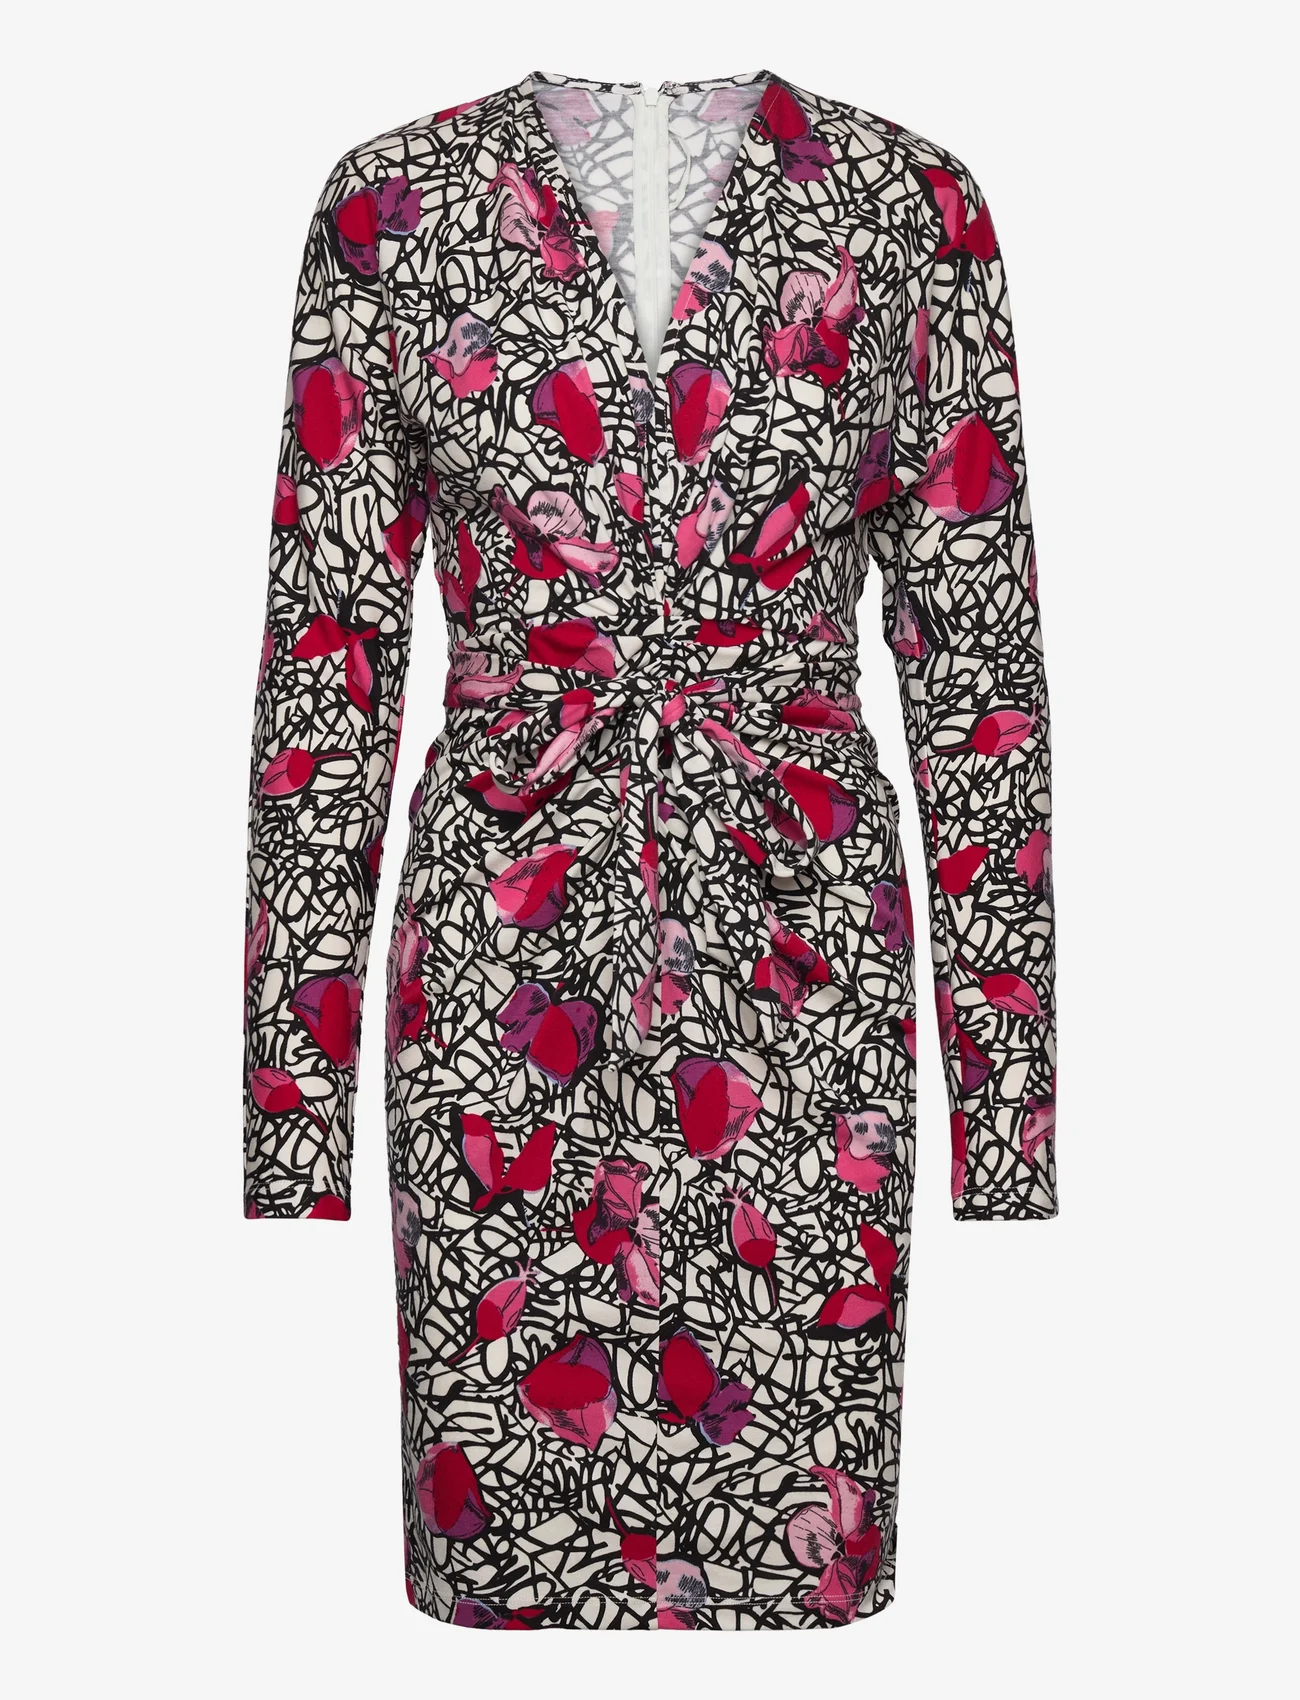 Diane von Furstenberg - DVF NEW MILEY DRESS - midimekot - signature floral s - 1